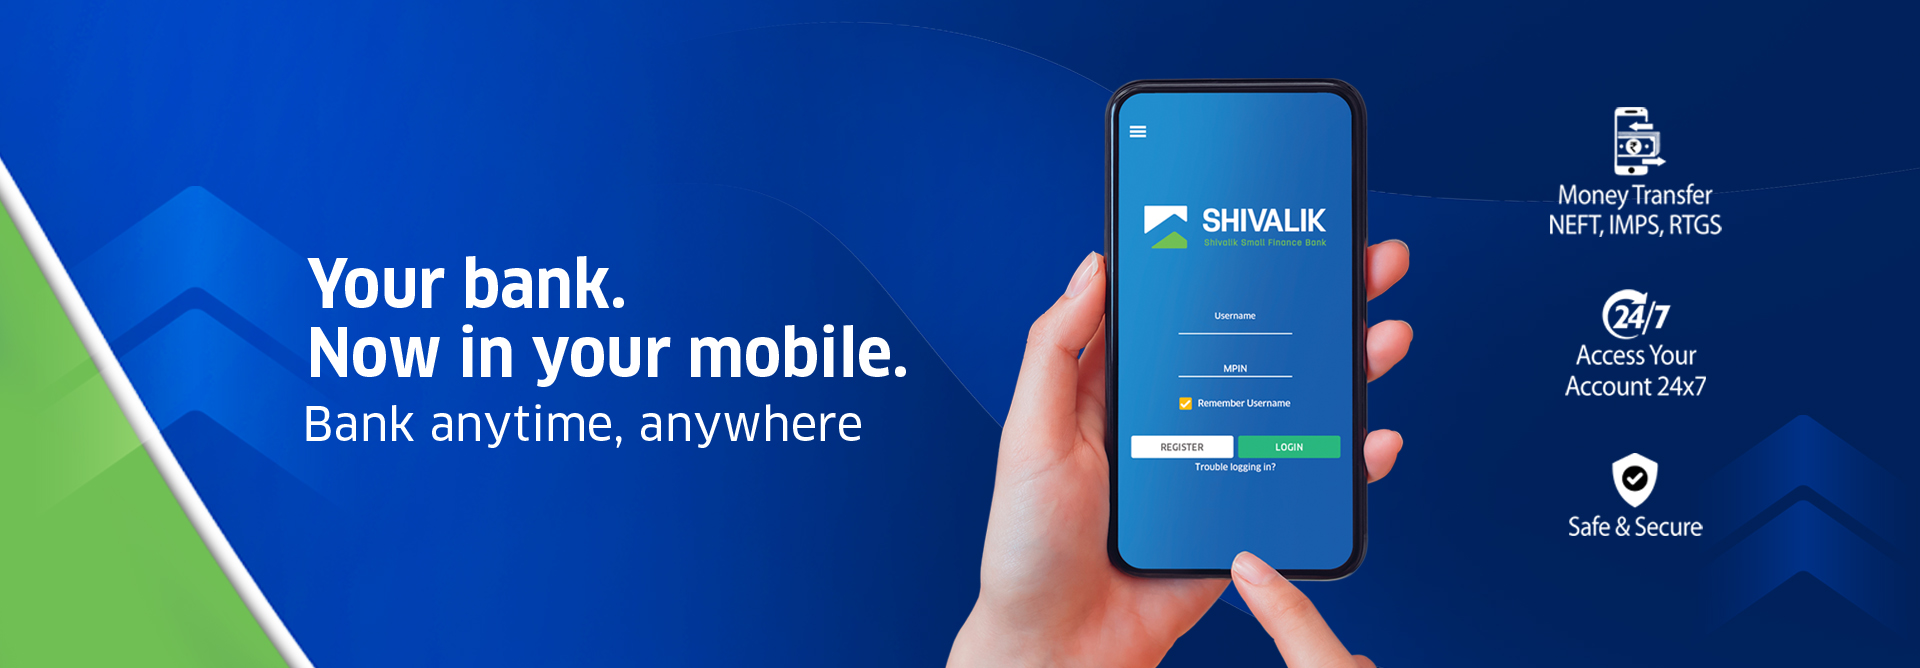 Shivalik Mobile Banking App